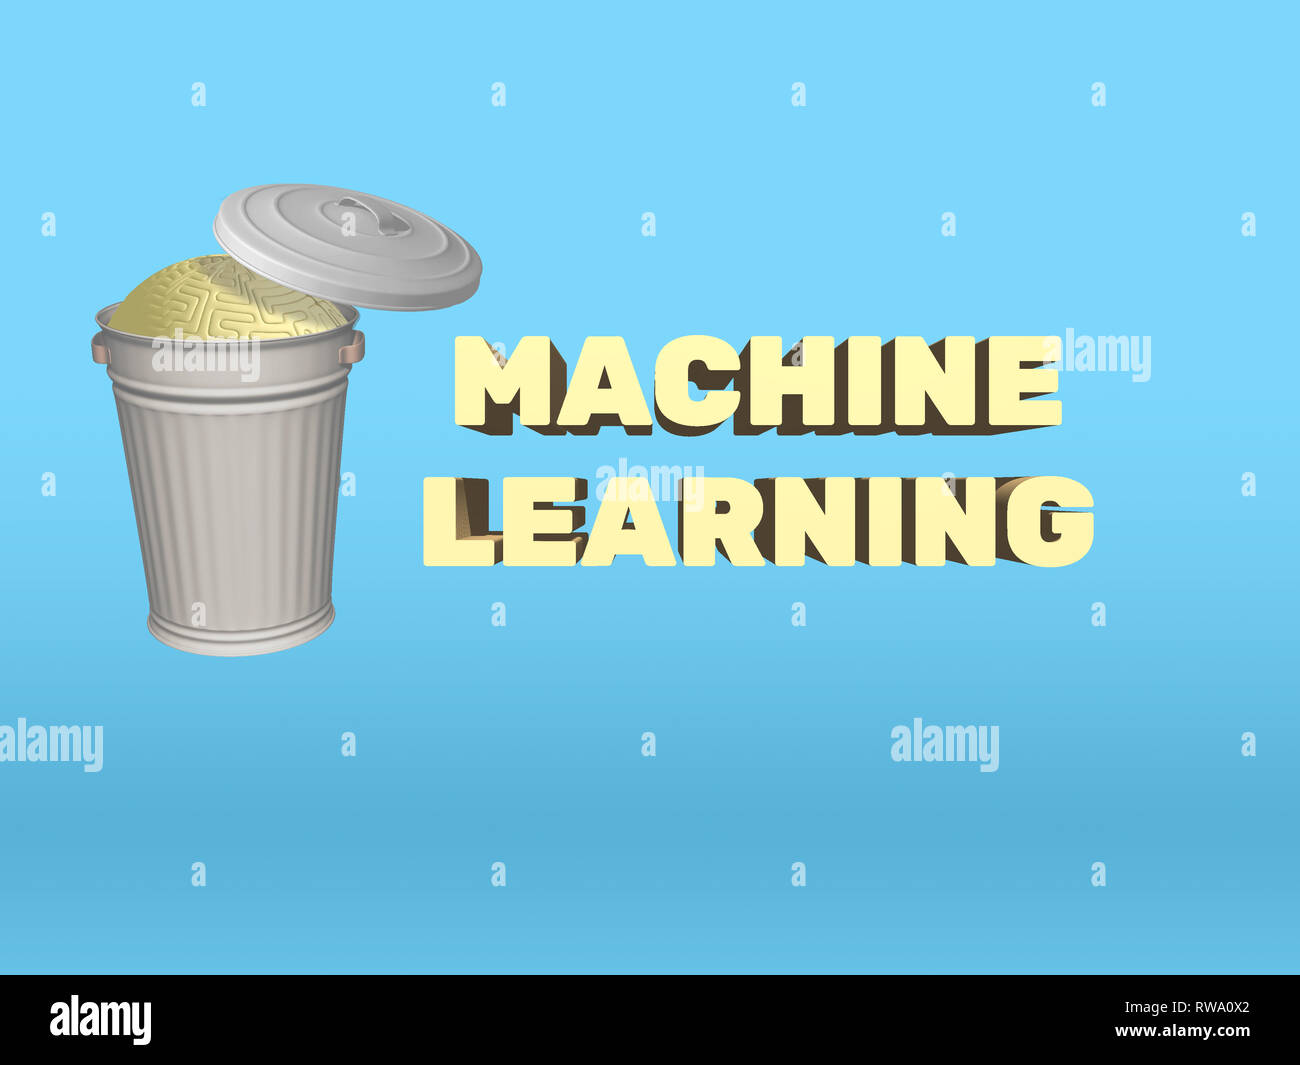 Rendu 3D illustration de poubelle contenant cerveau humain, remplacé par l'apprentissage automatique. AI concept de remplacement inévitable de l'esprit humain. Banque D'Images